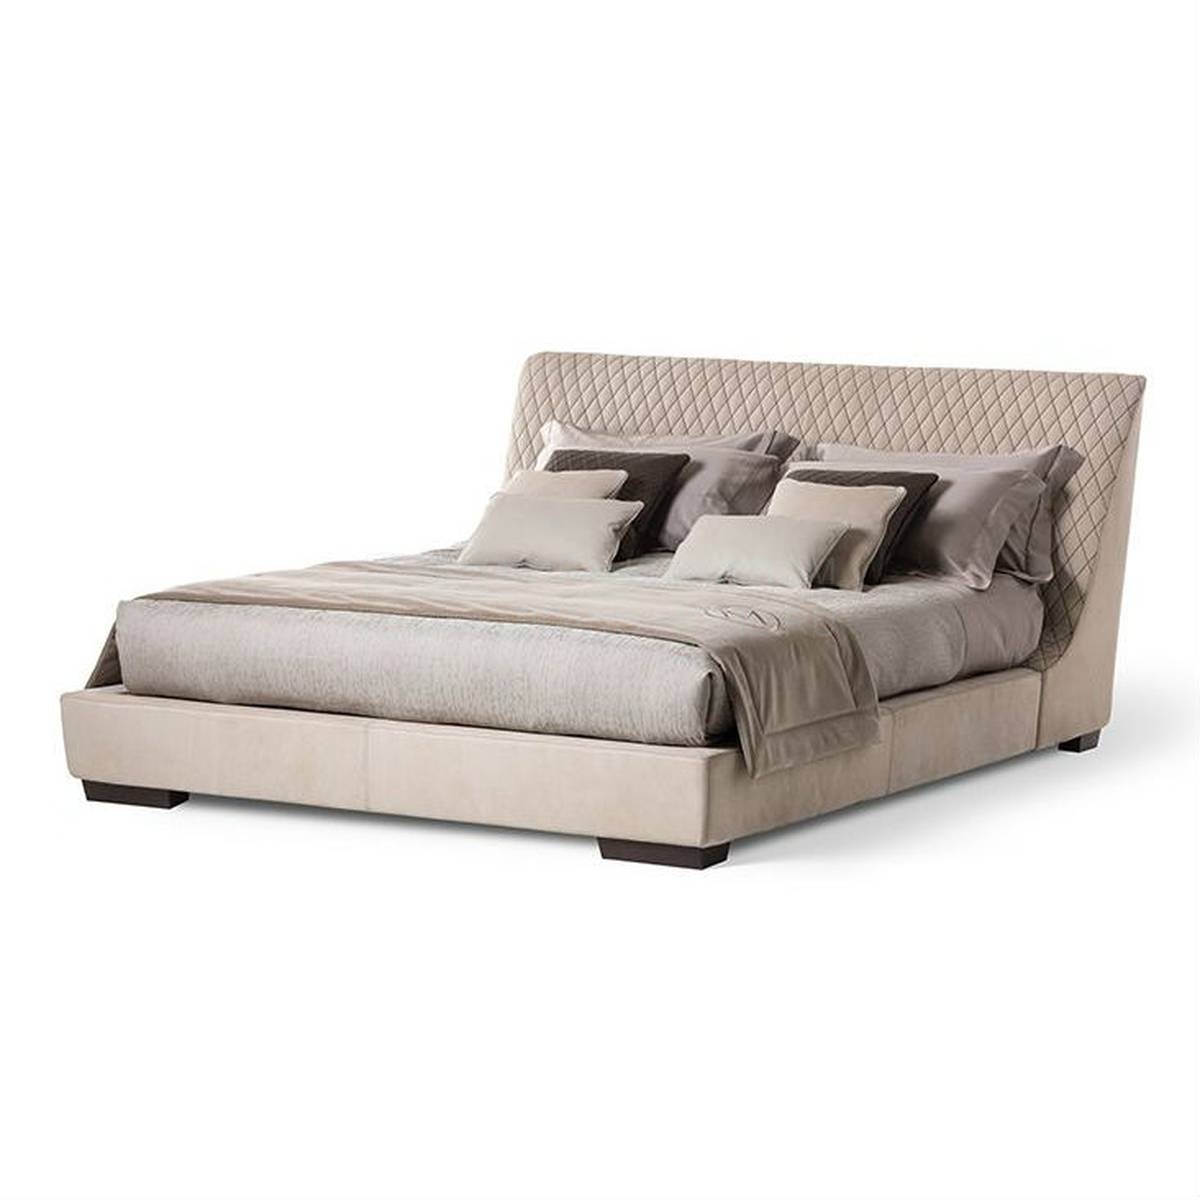 Кровать с мягким изголовьем Pascal bed из Италии фабрики MEDEA (Life style)